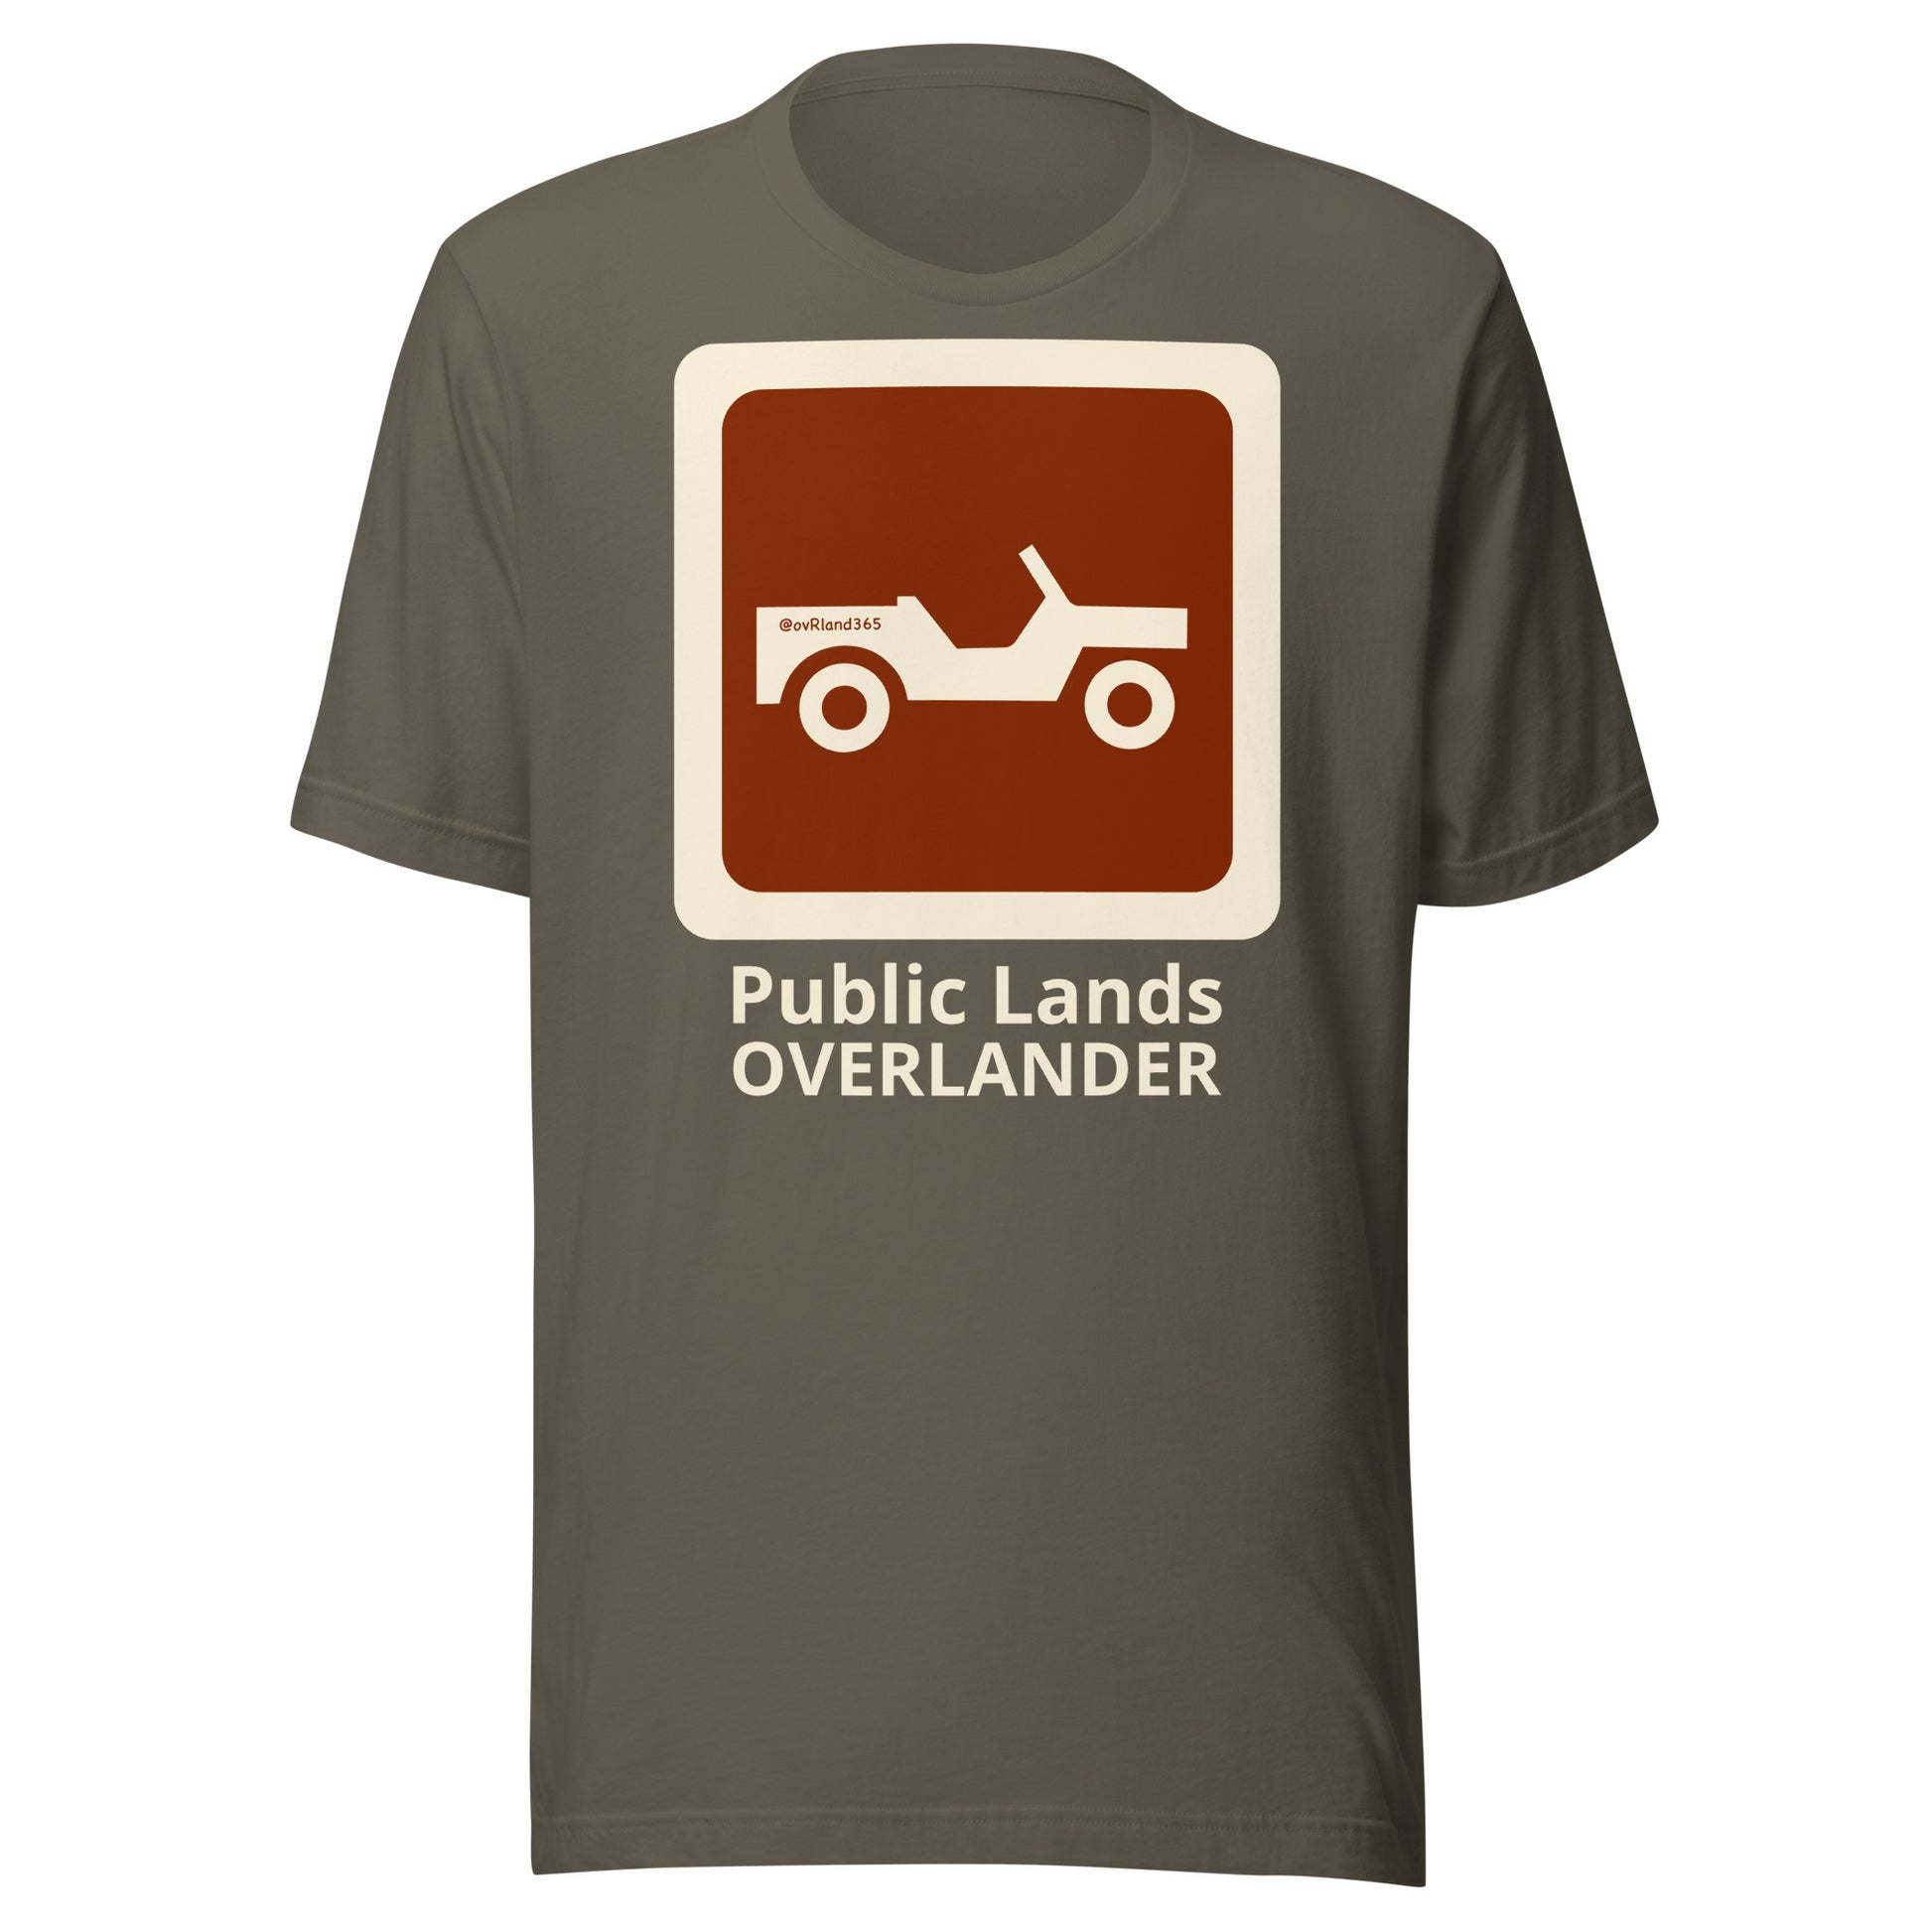 Green Public Lands OVERLANDER t-shirt. overland365.com